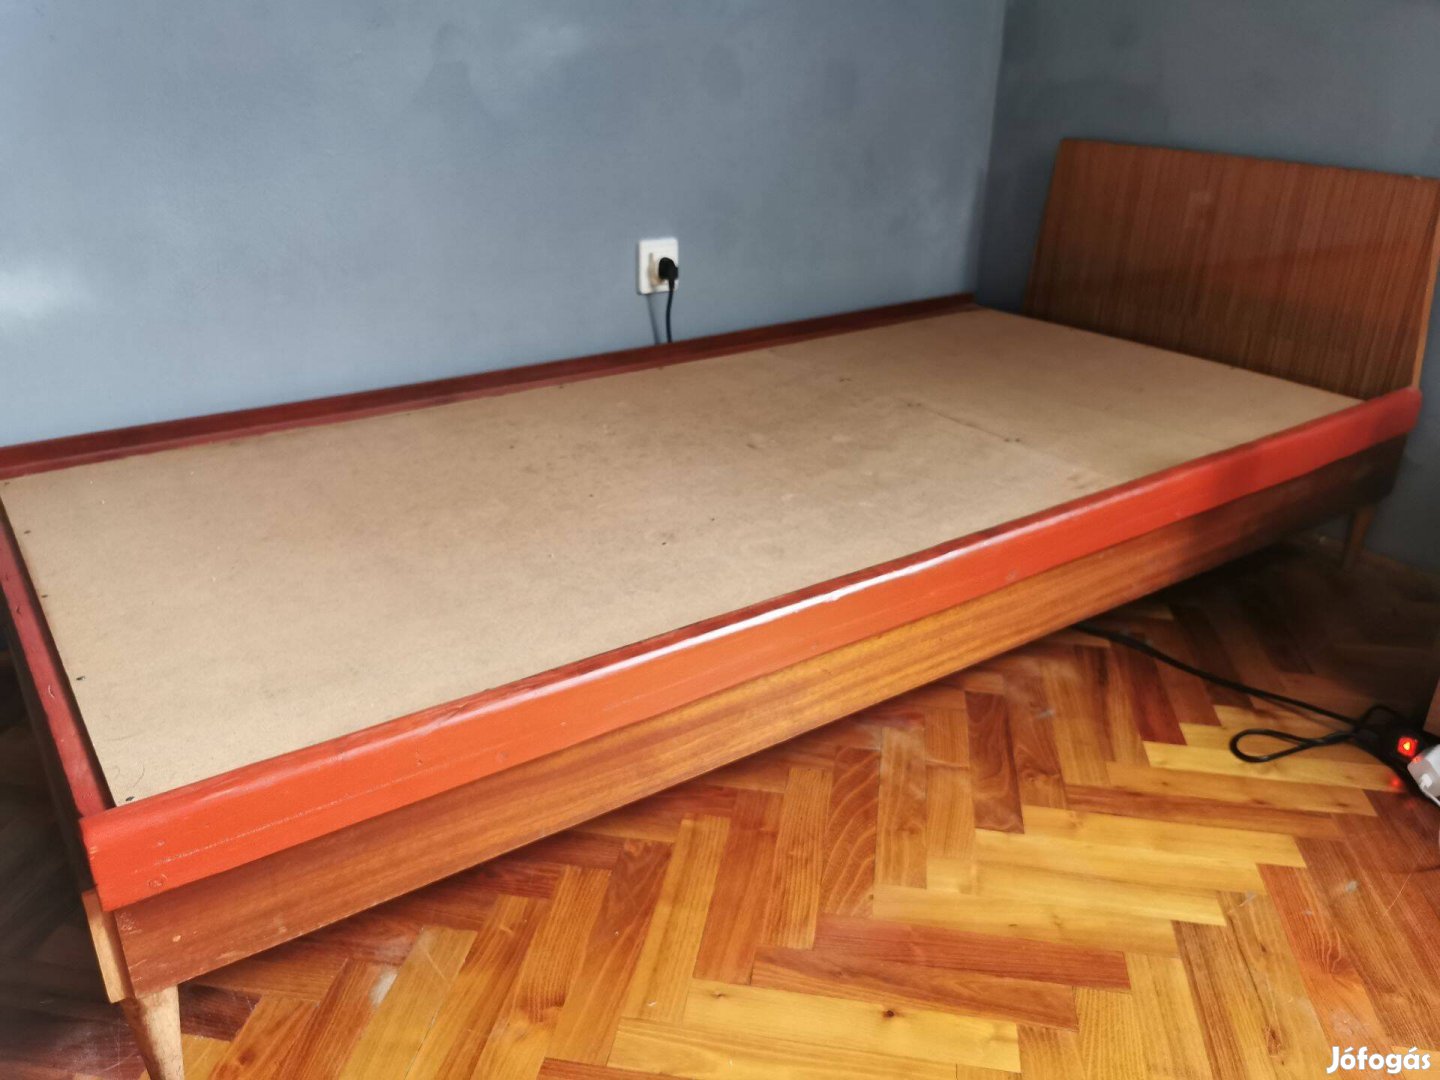 Ingyen elvihető ágy matrac nélkül. 90x200 cm. Eger